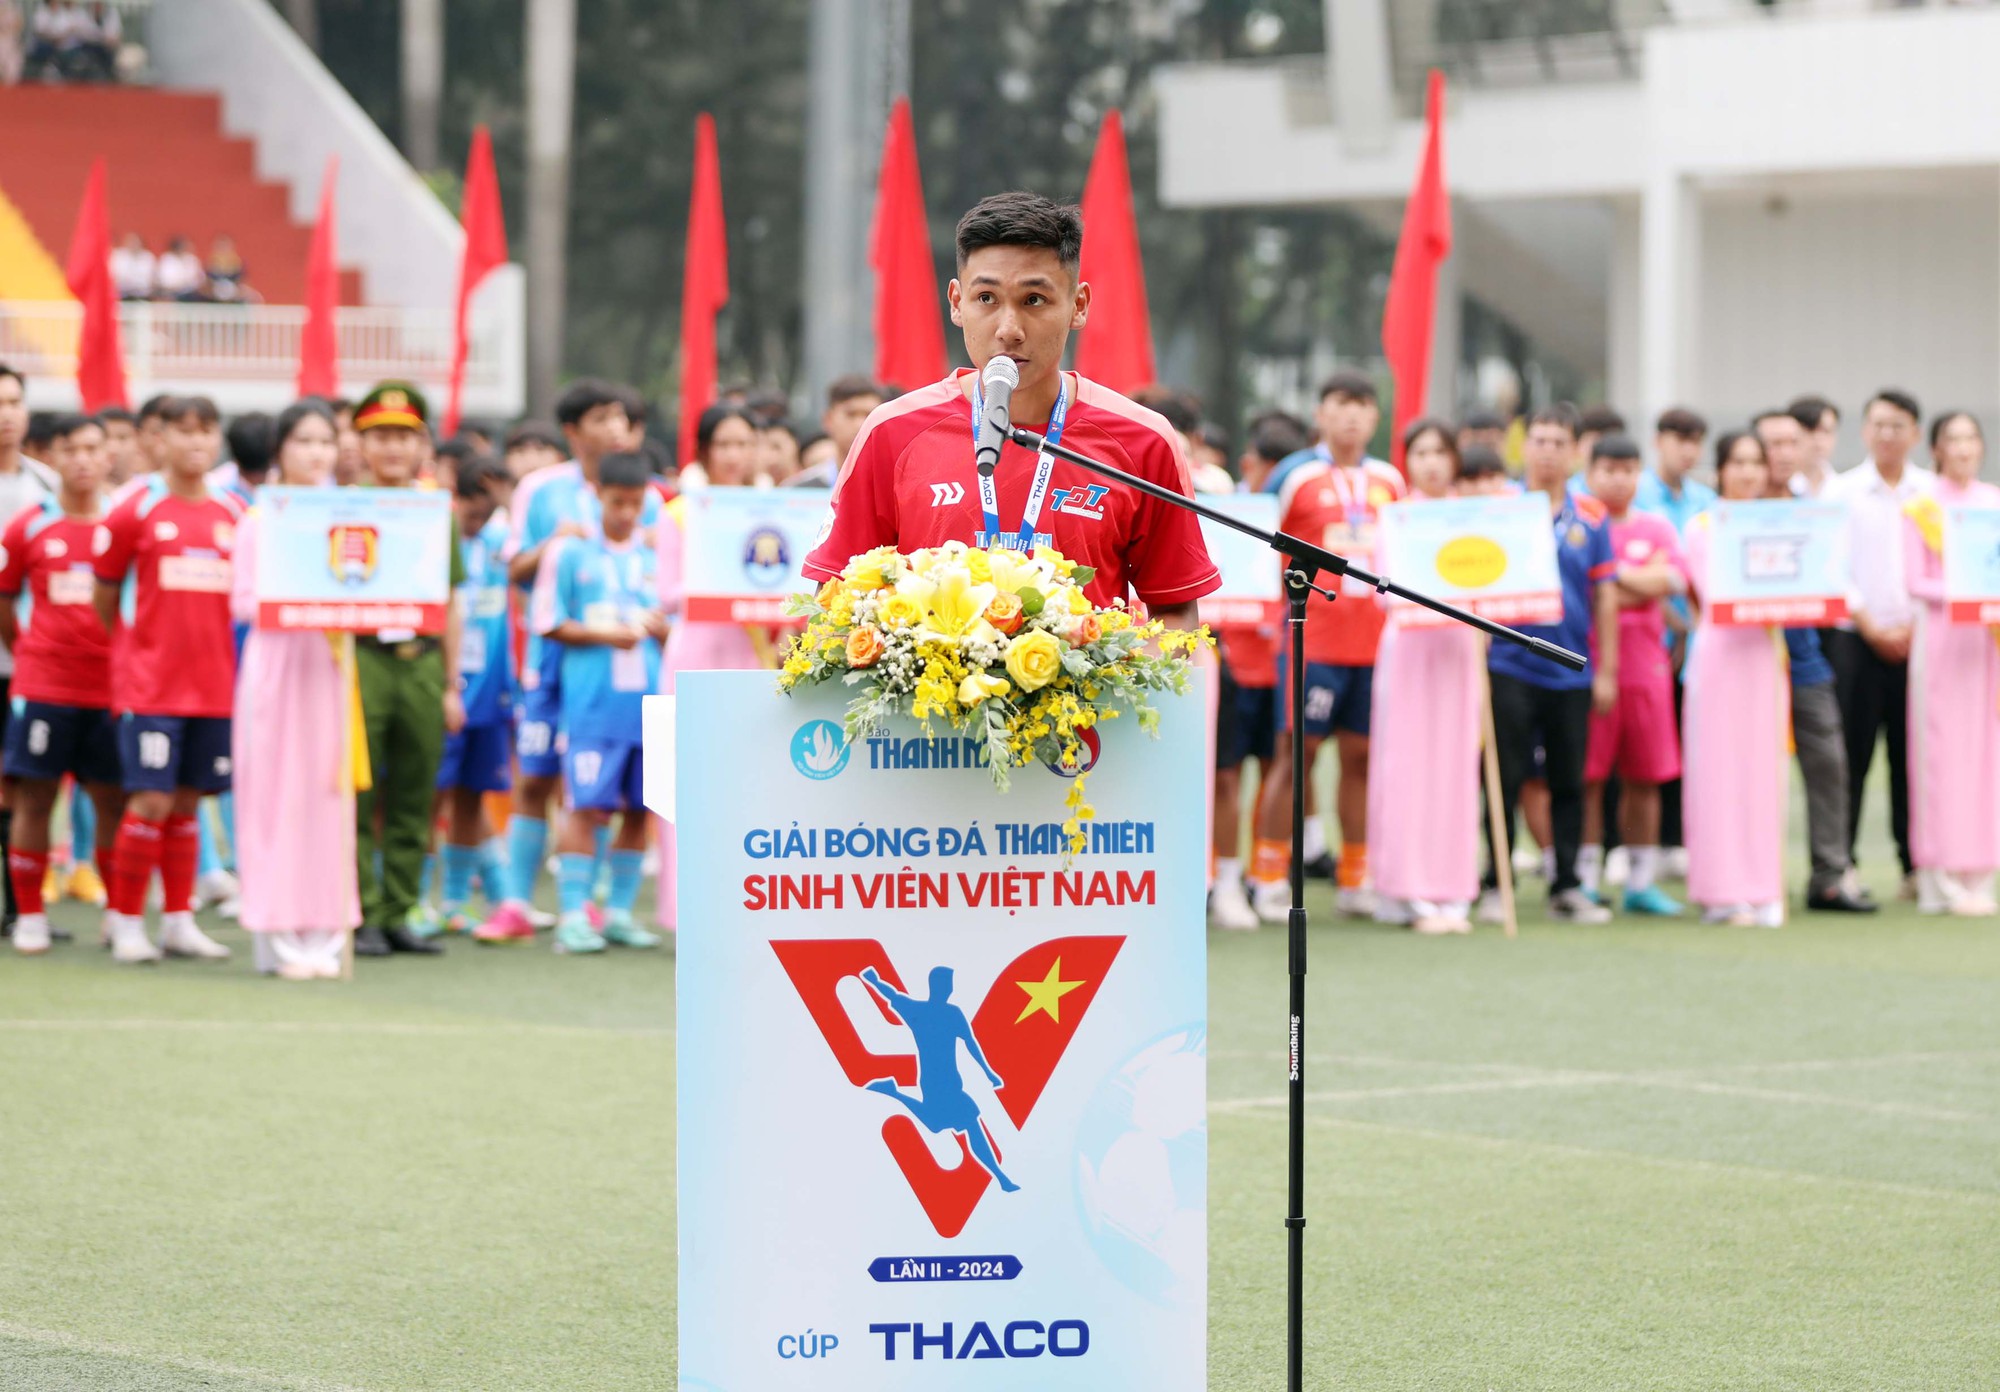 Hình ảnh ấn tượng ngày khai màn giải bóng đá Thanh Niên sinh viên Việt Nam- Ảnh 12.